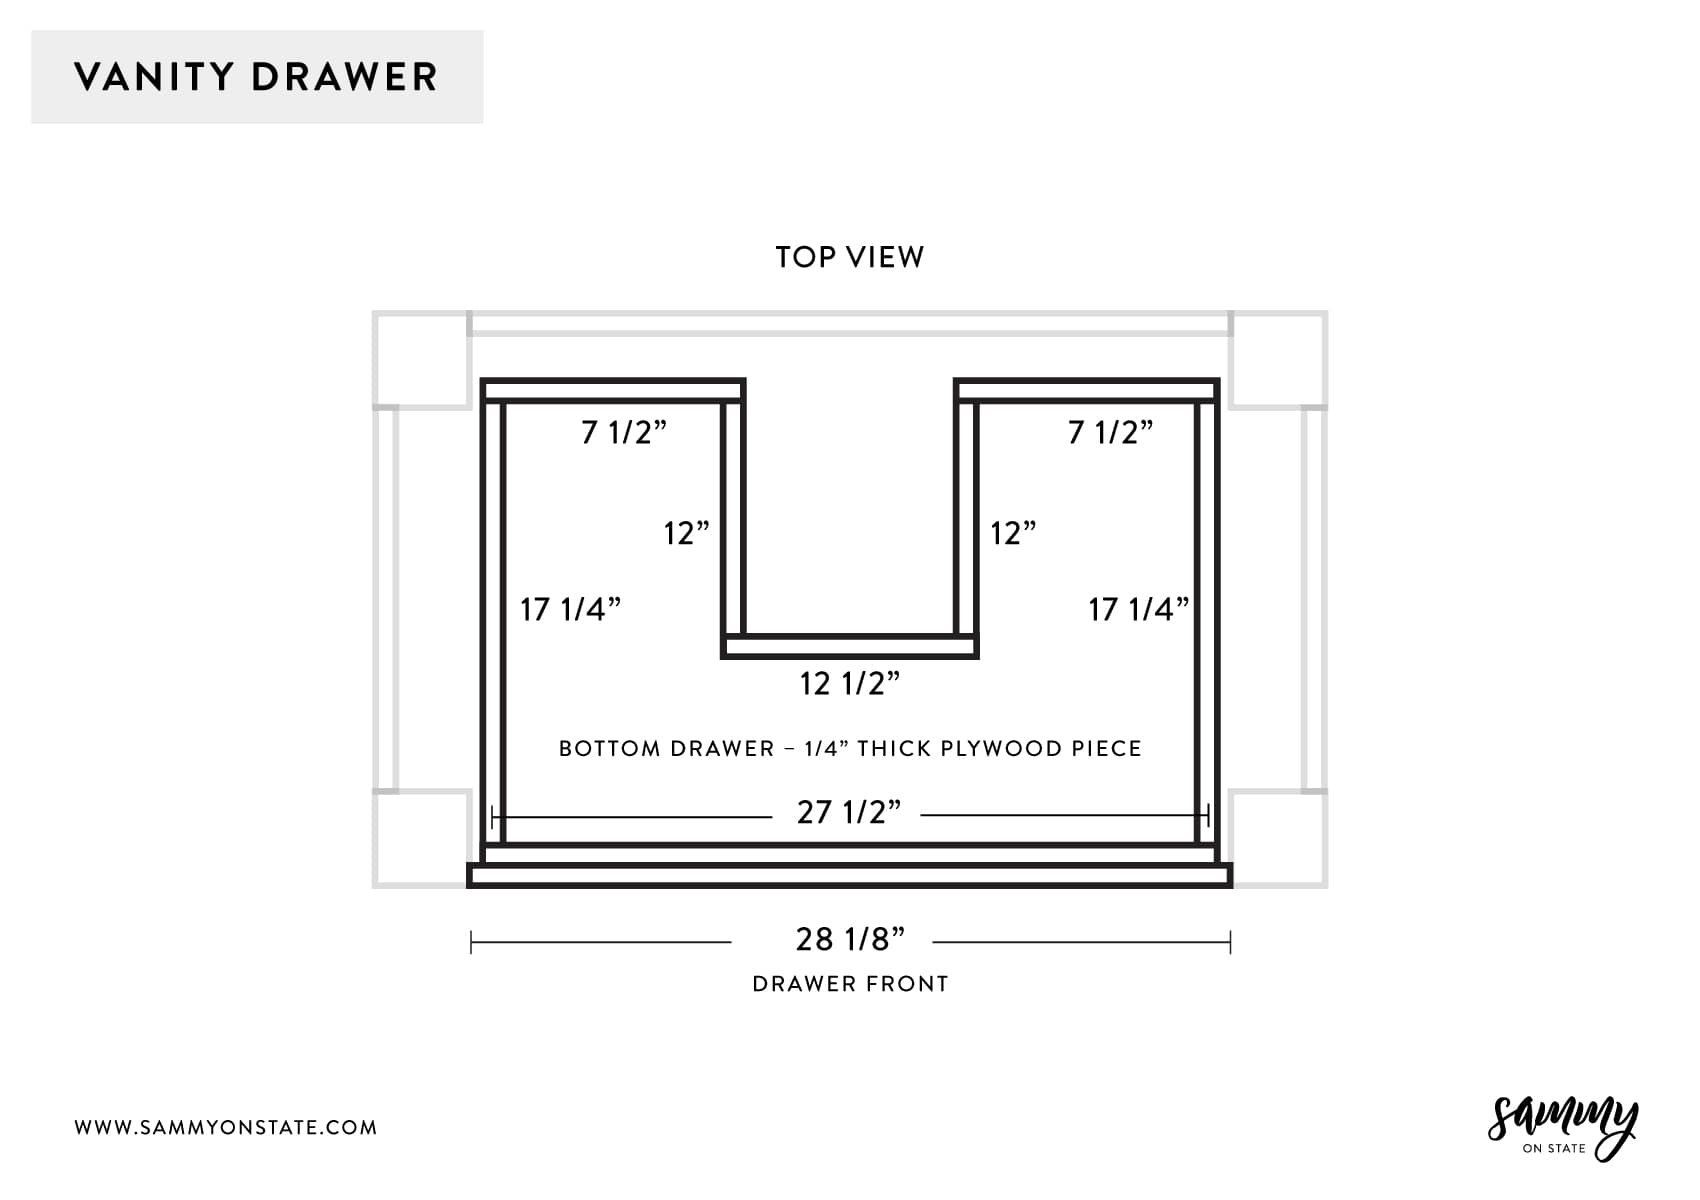 Diagram of vanity drawer